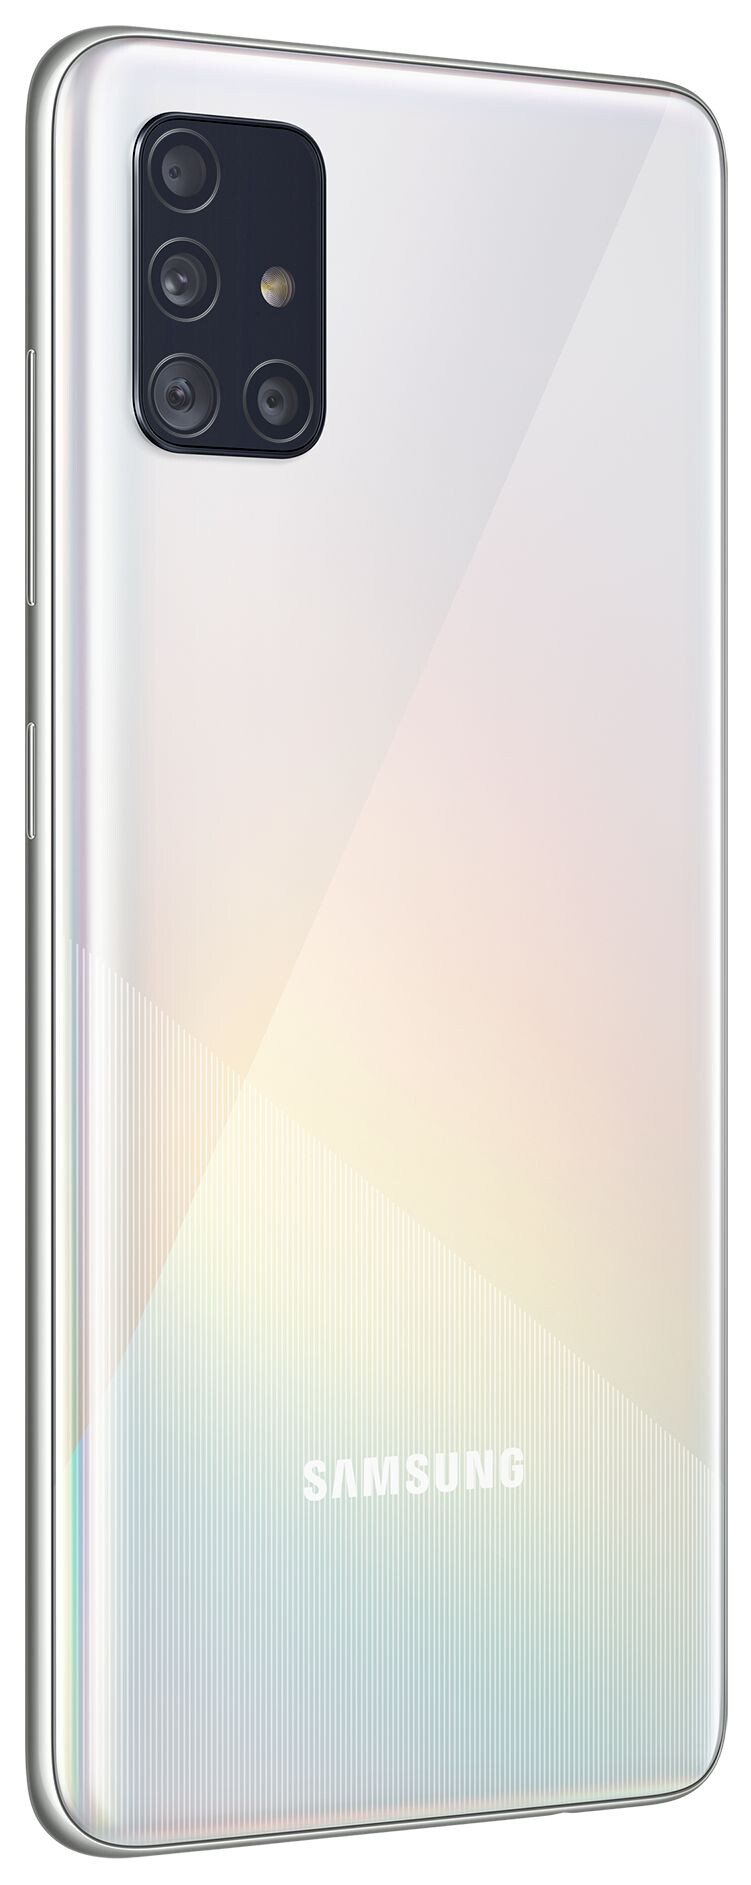 Смартфон Samsung Galaxy A51 4/64GB (ЕАС) Prism Crush White (Белый)